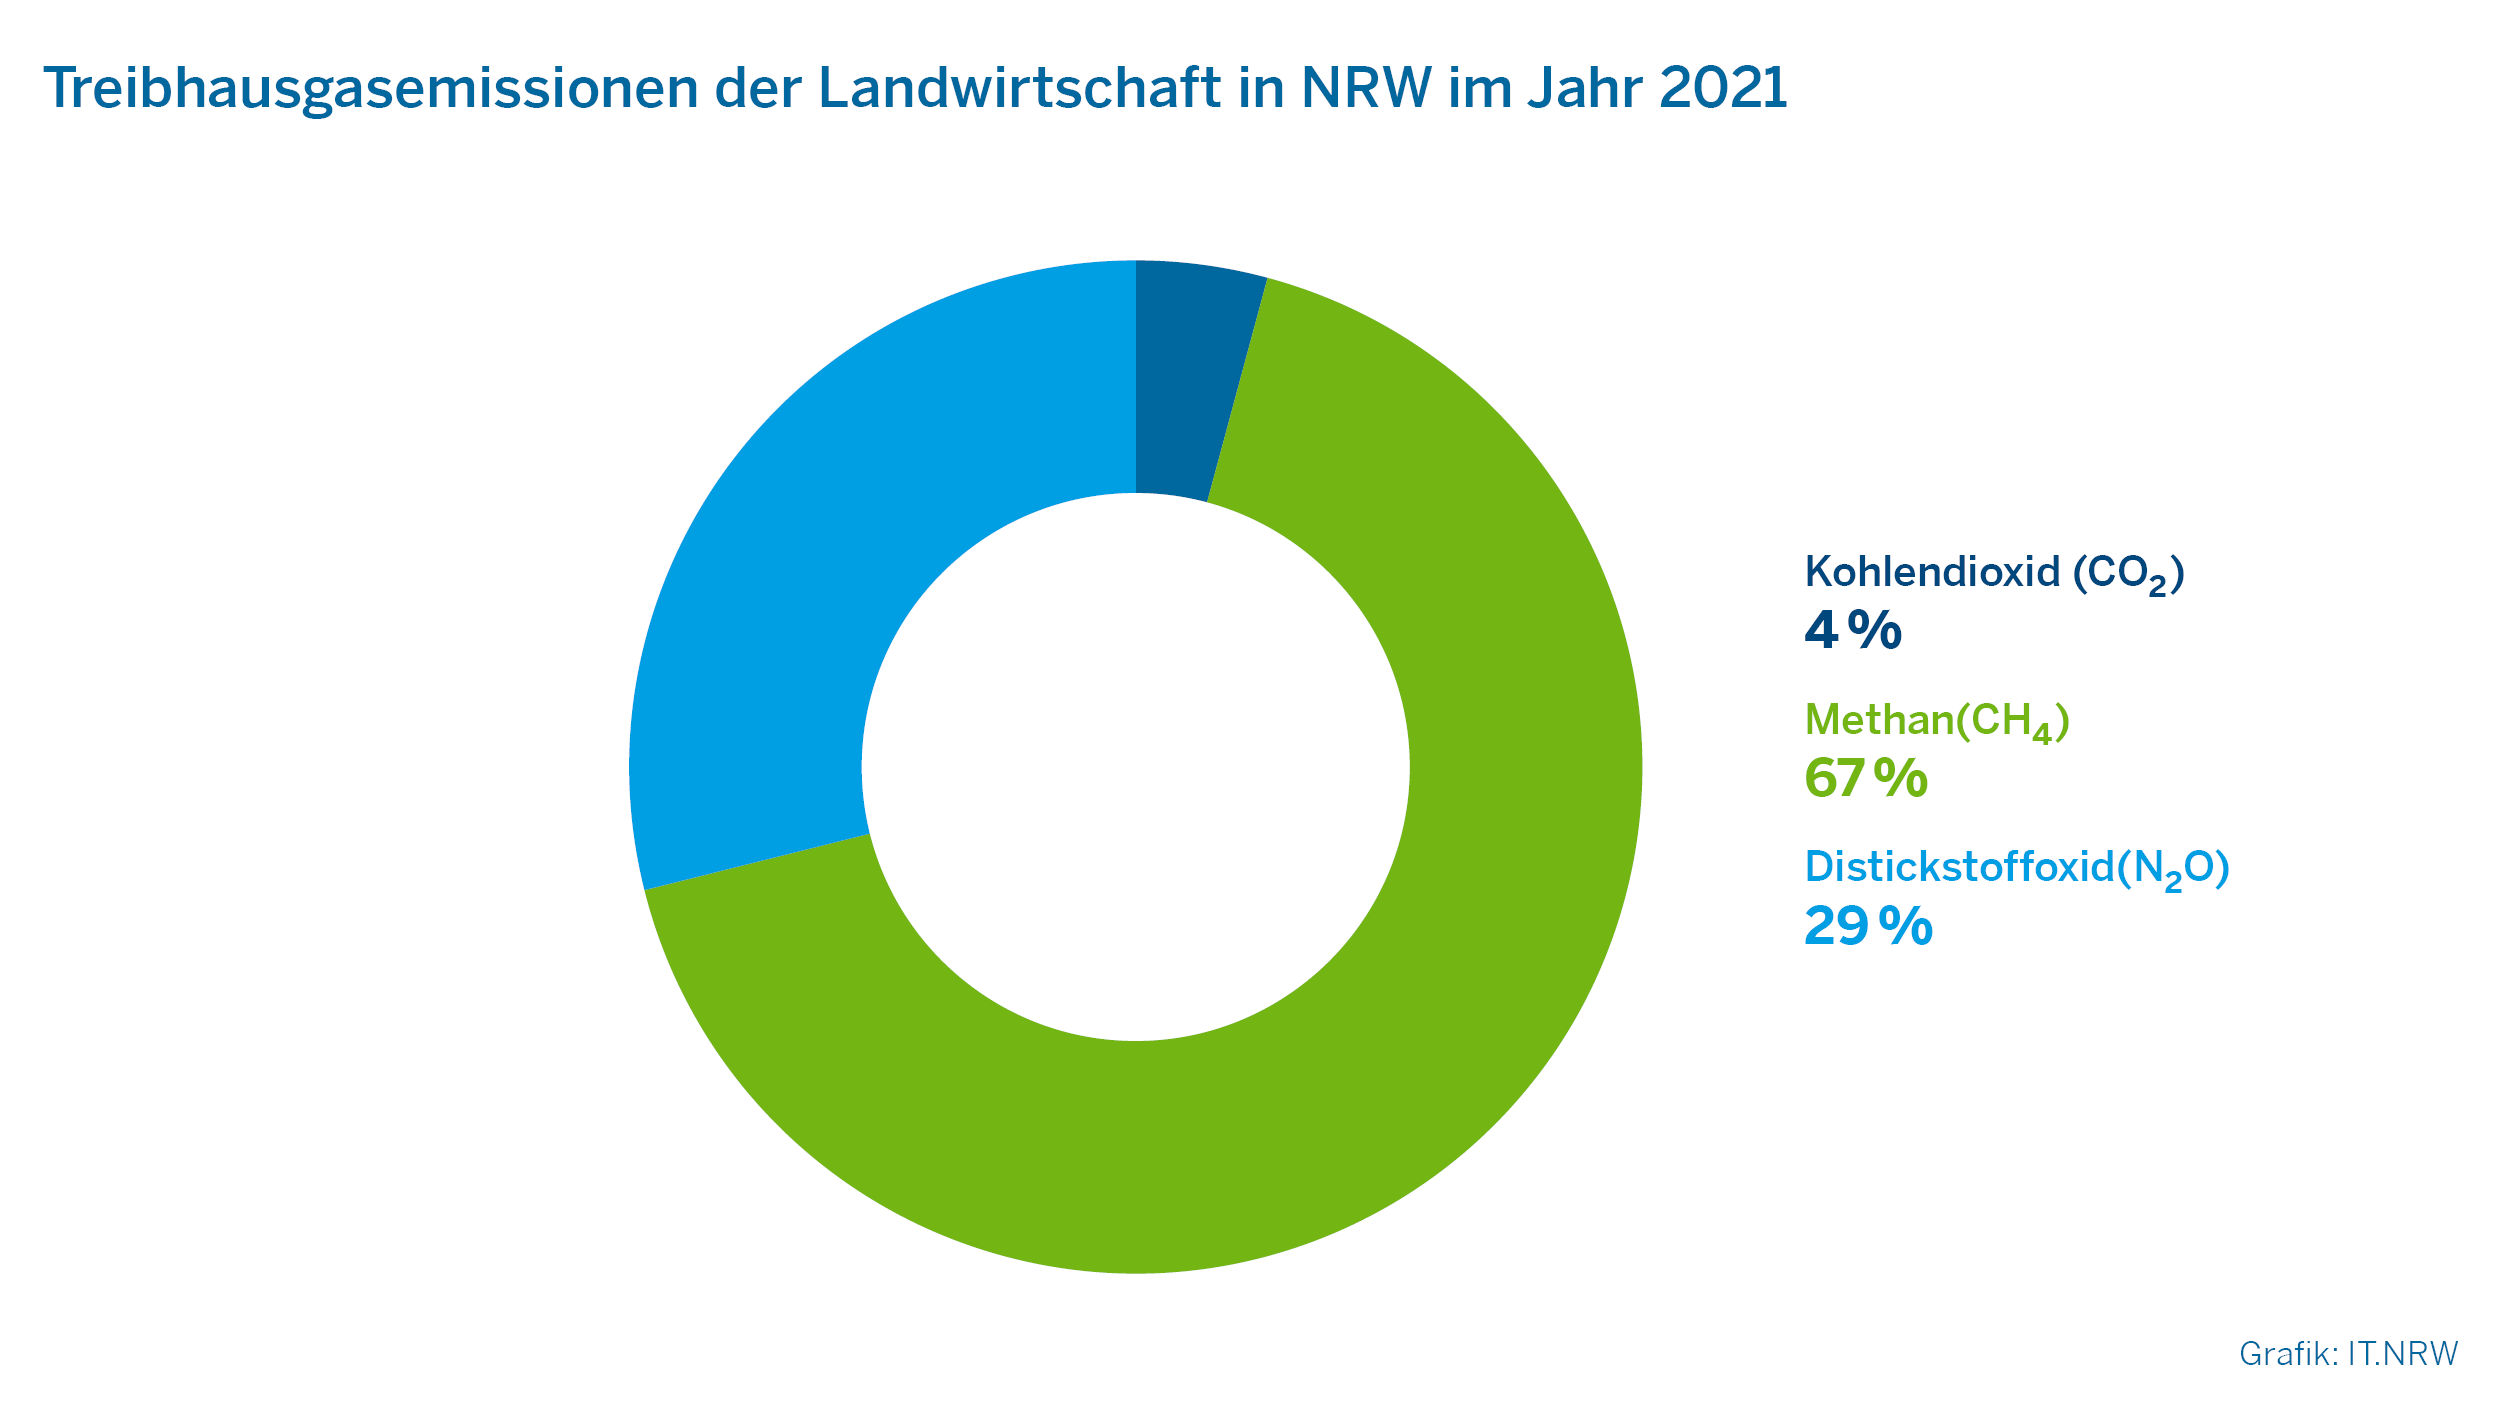 Treibhausgasemissionen der Landwirtschaft in NRW im Jahr 2021